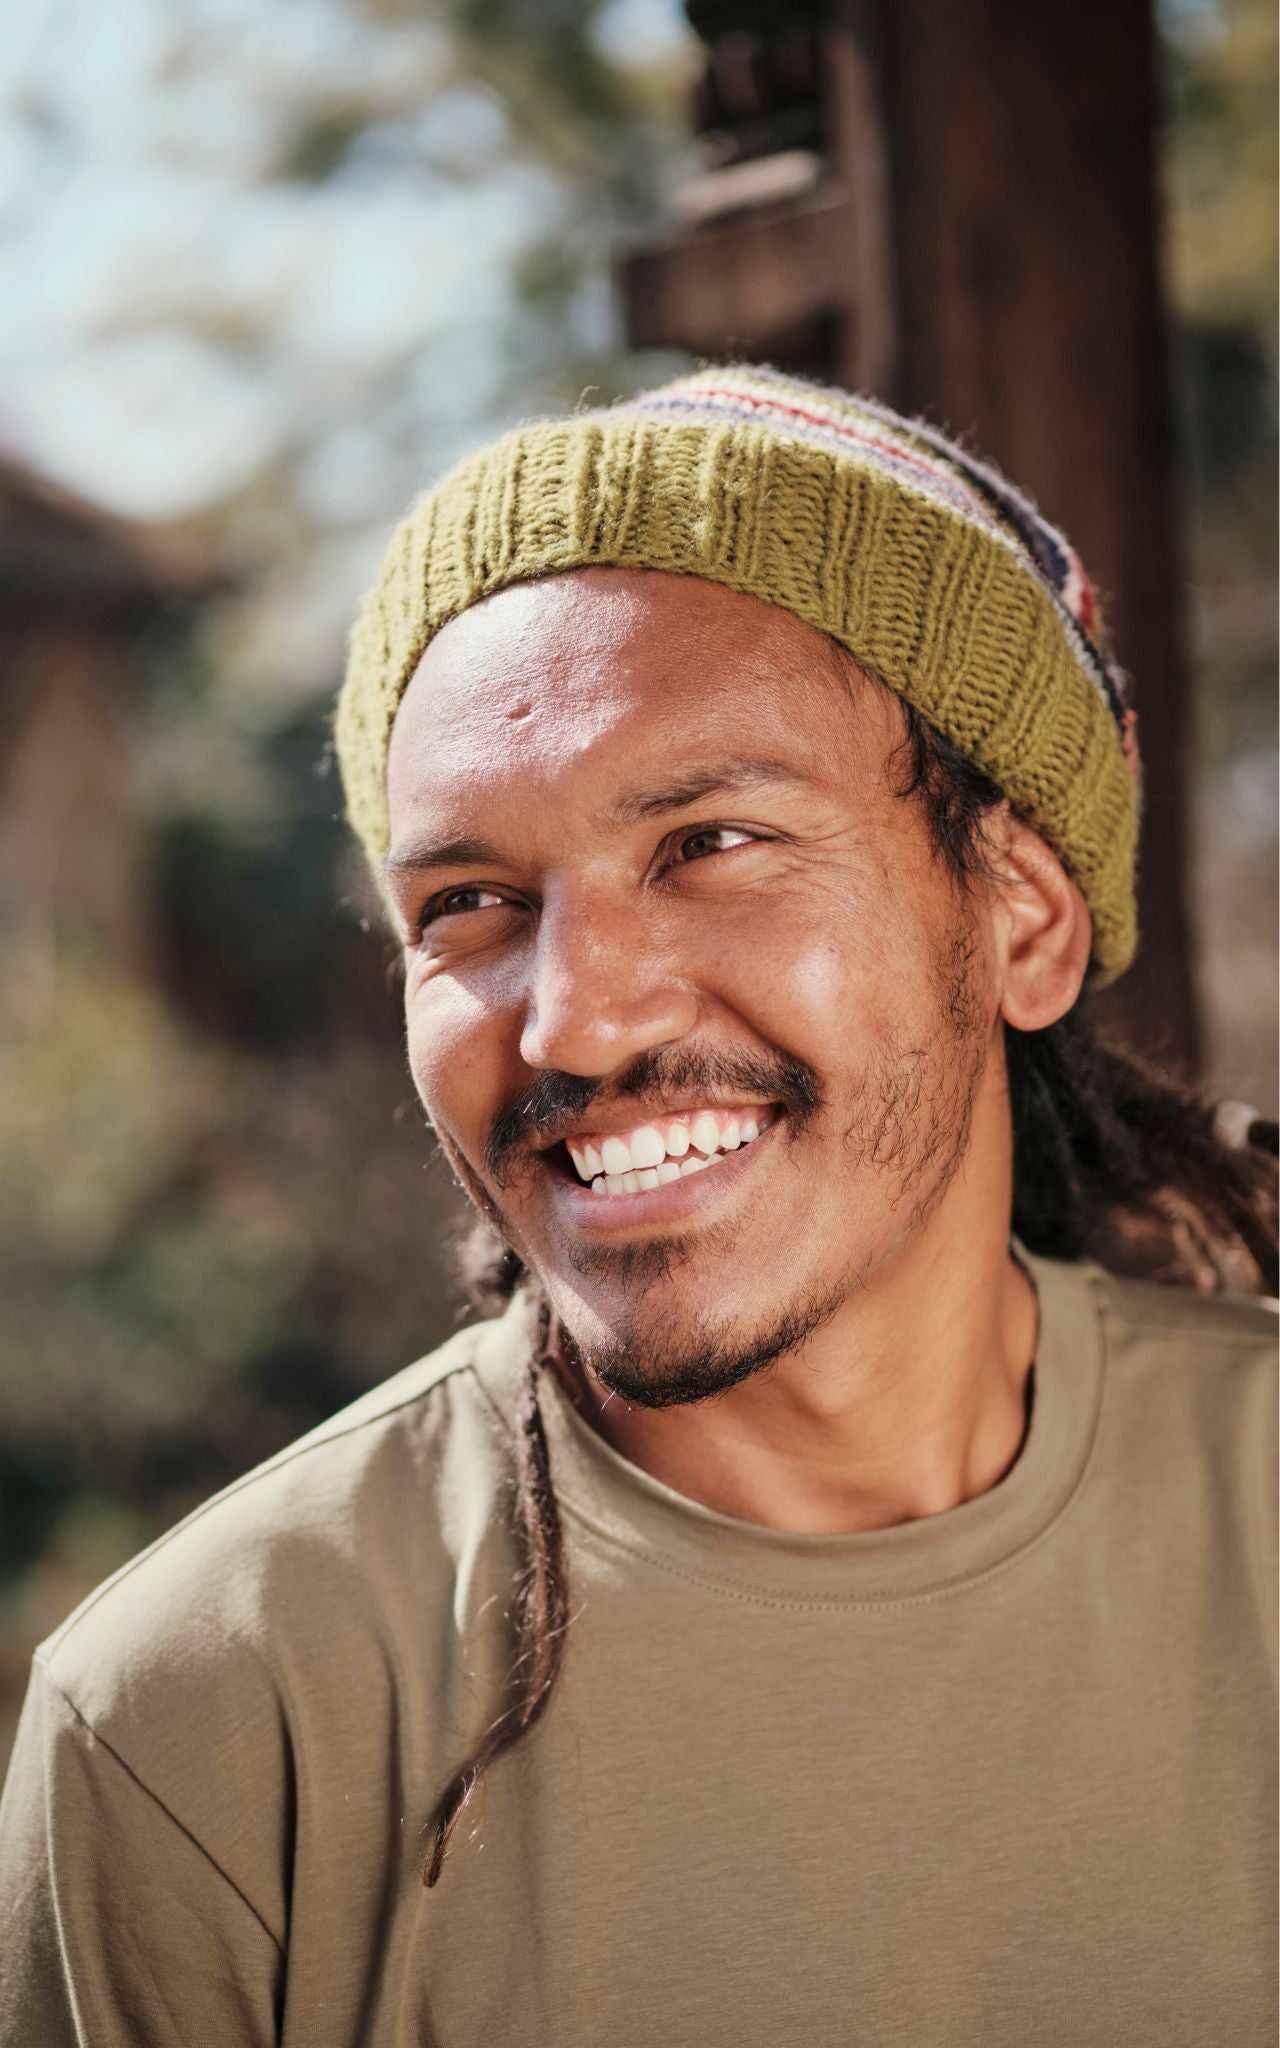 Surya Australia Merino Wool Slouch Beanie for Men from Nepal - Green